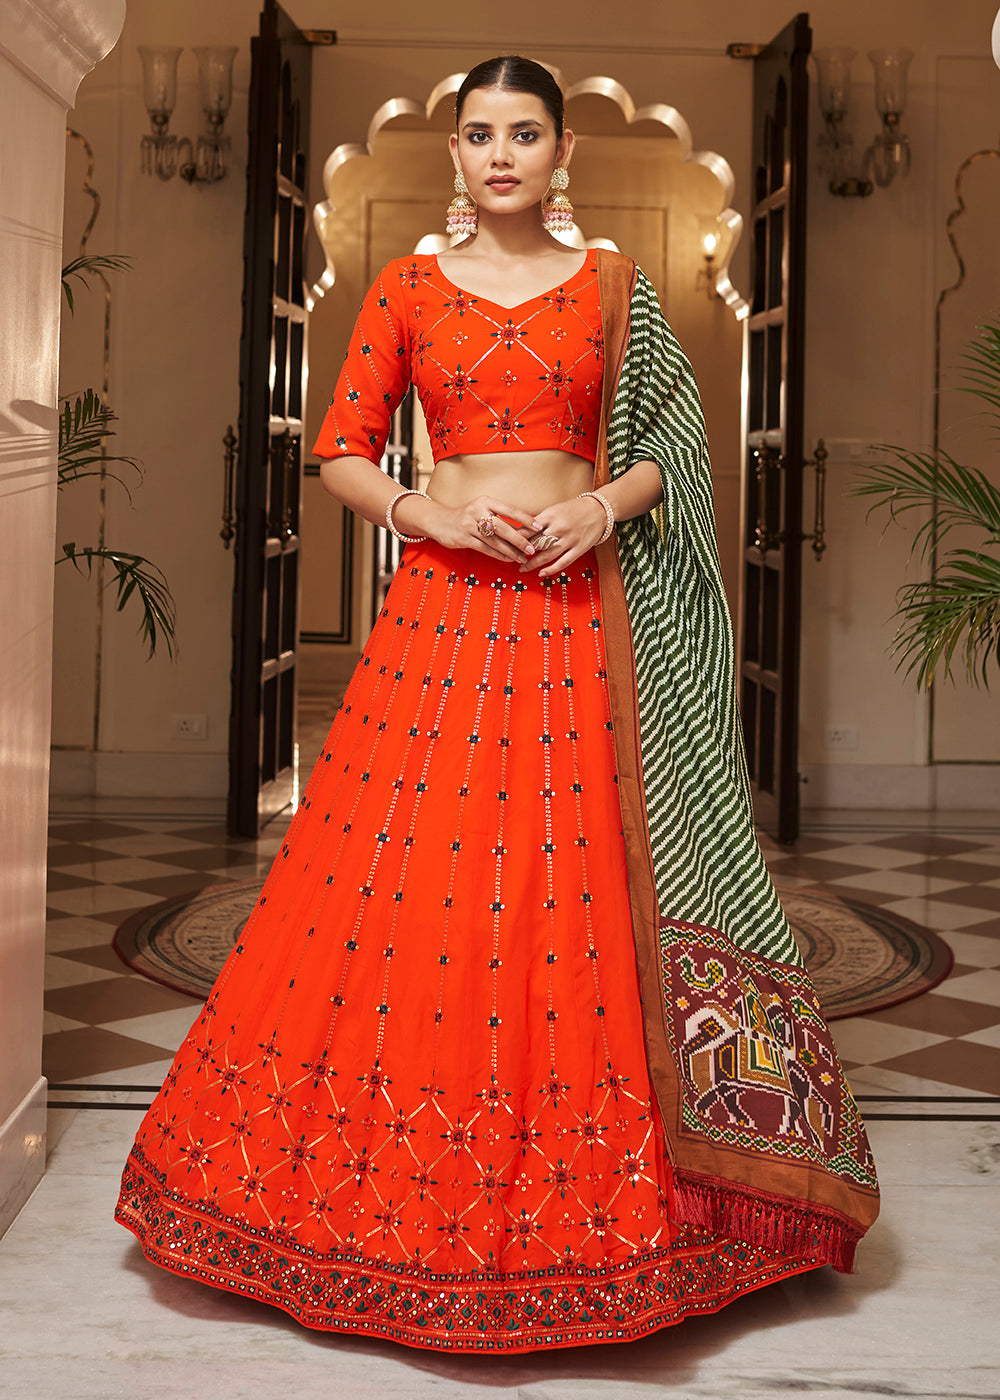 Buy Now Enchanting Sequins Bright Orange Wedding Lehenga Choli Online in USA, UK, Canada & Worldwide at Empress Clothing. 